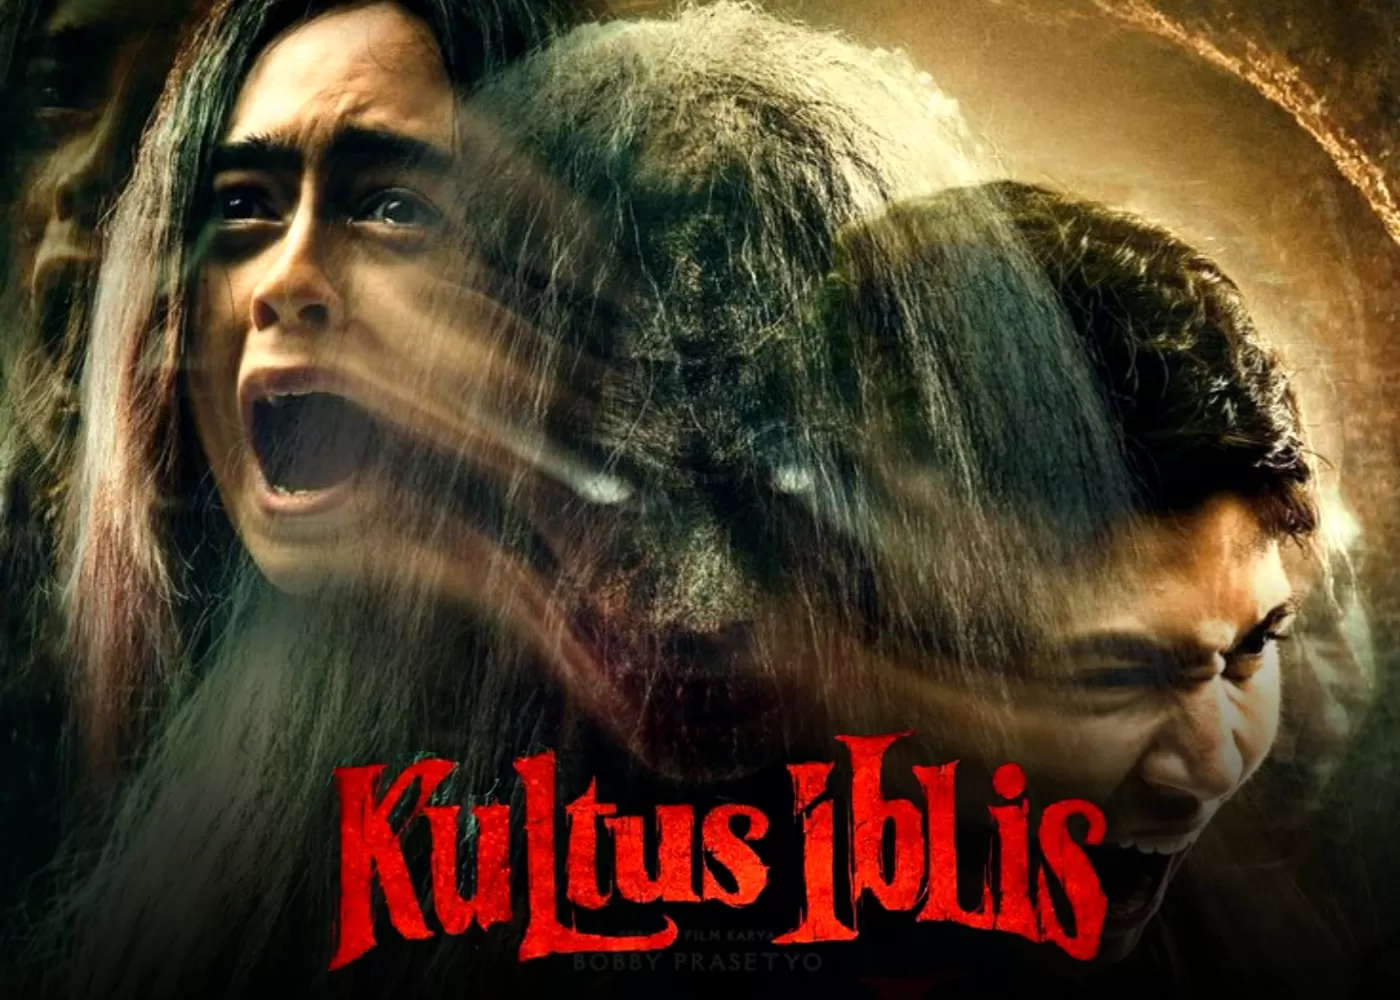 Tayang Di Bioskop Mulai 2 November Ini Dia Sinopsis Film Horor Terbaru Kultus Iblis Yang Bikin 